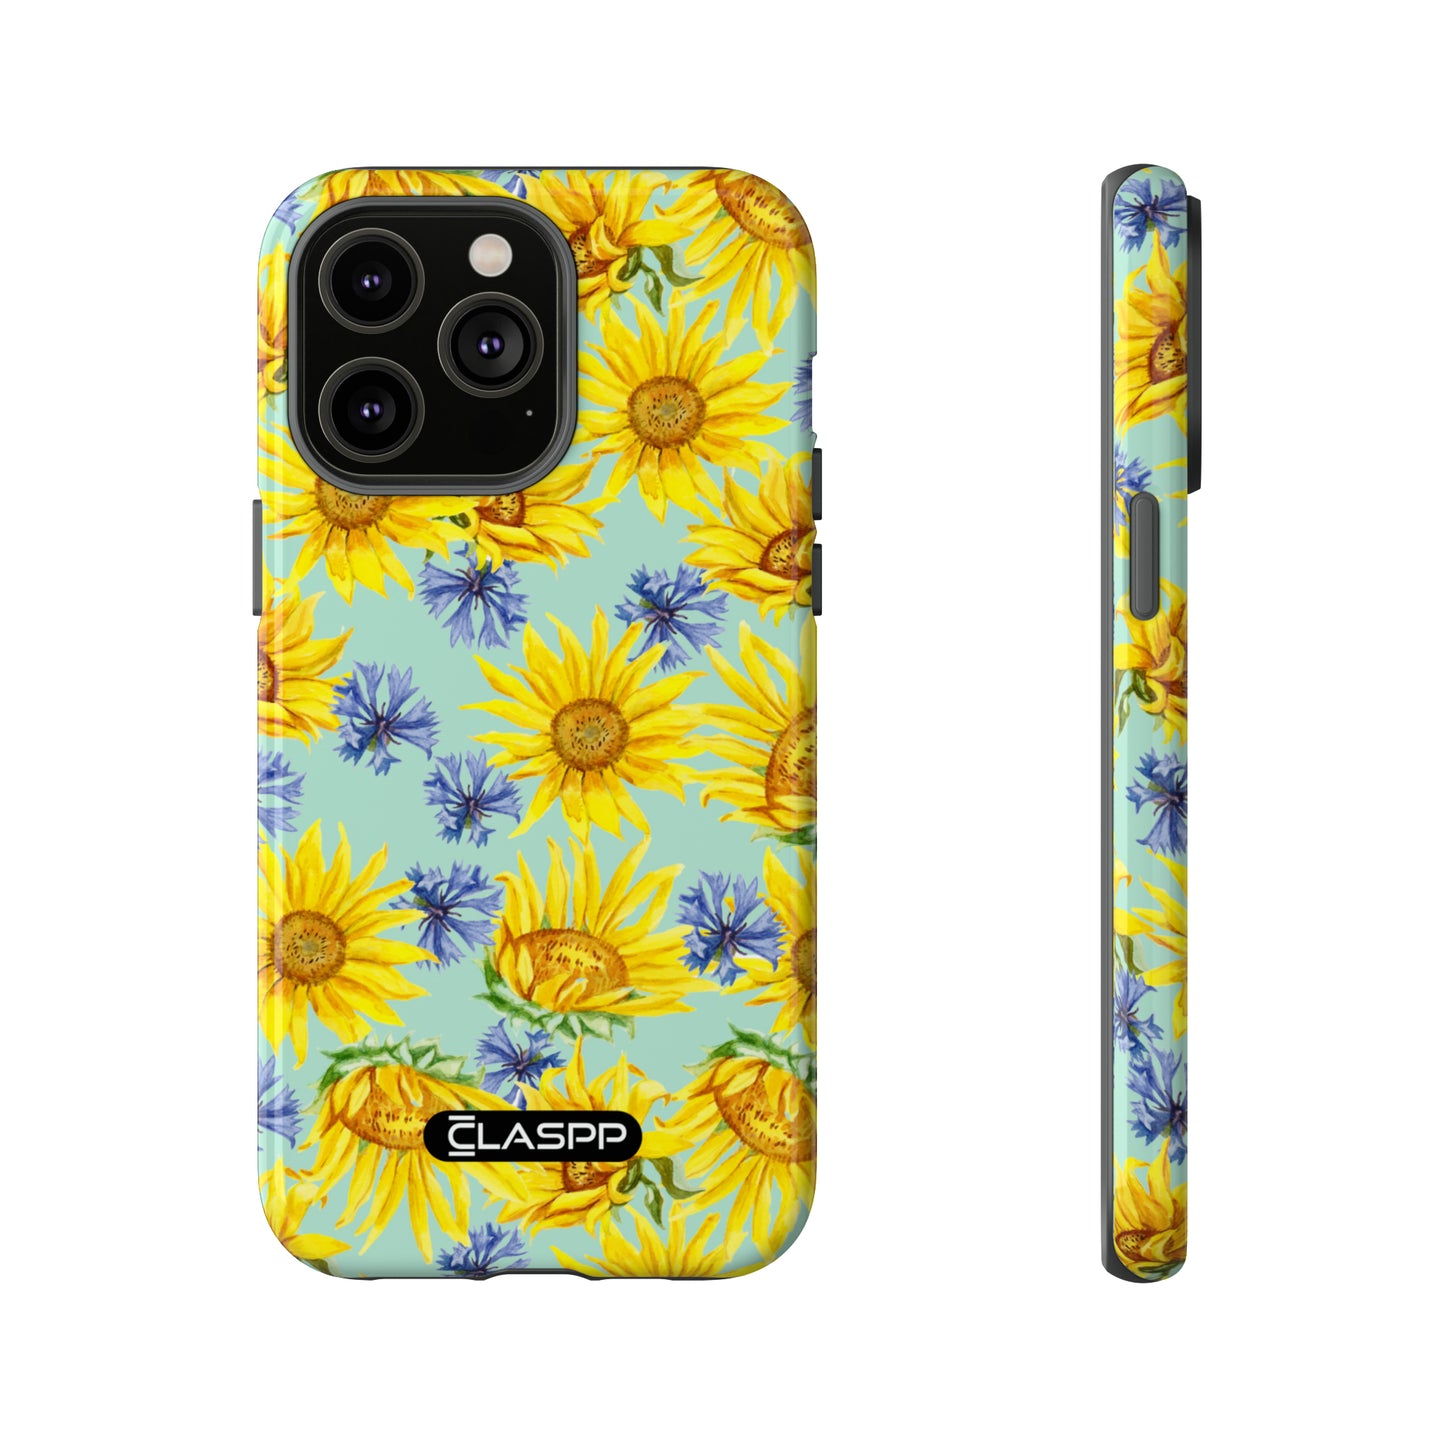 Sunny Smile | Hardshell Dual Layer Phone Case